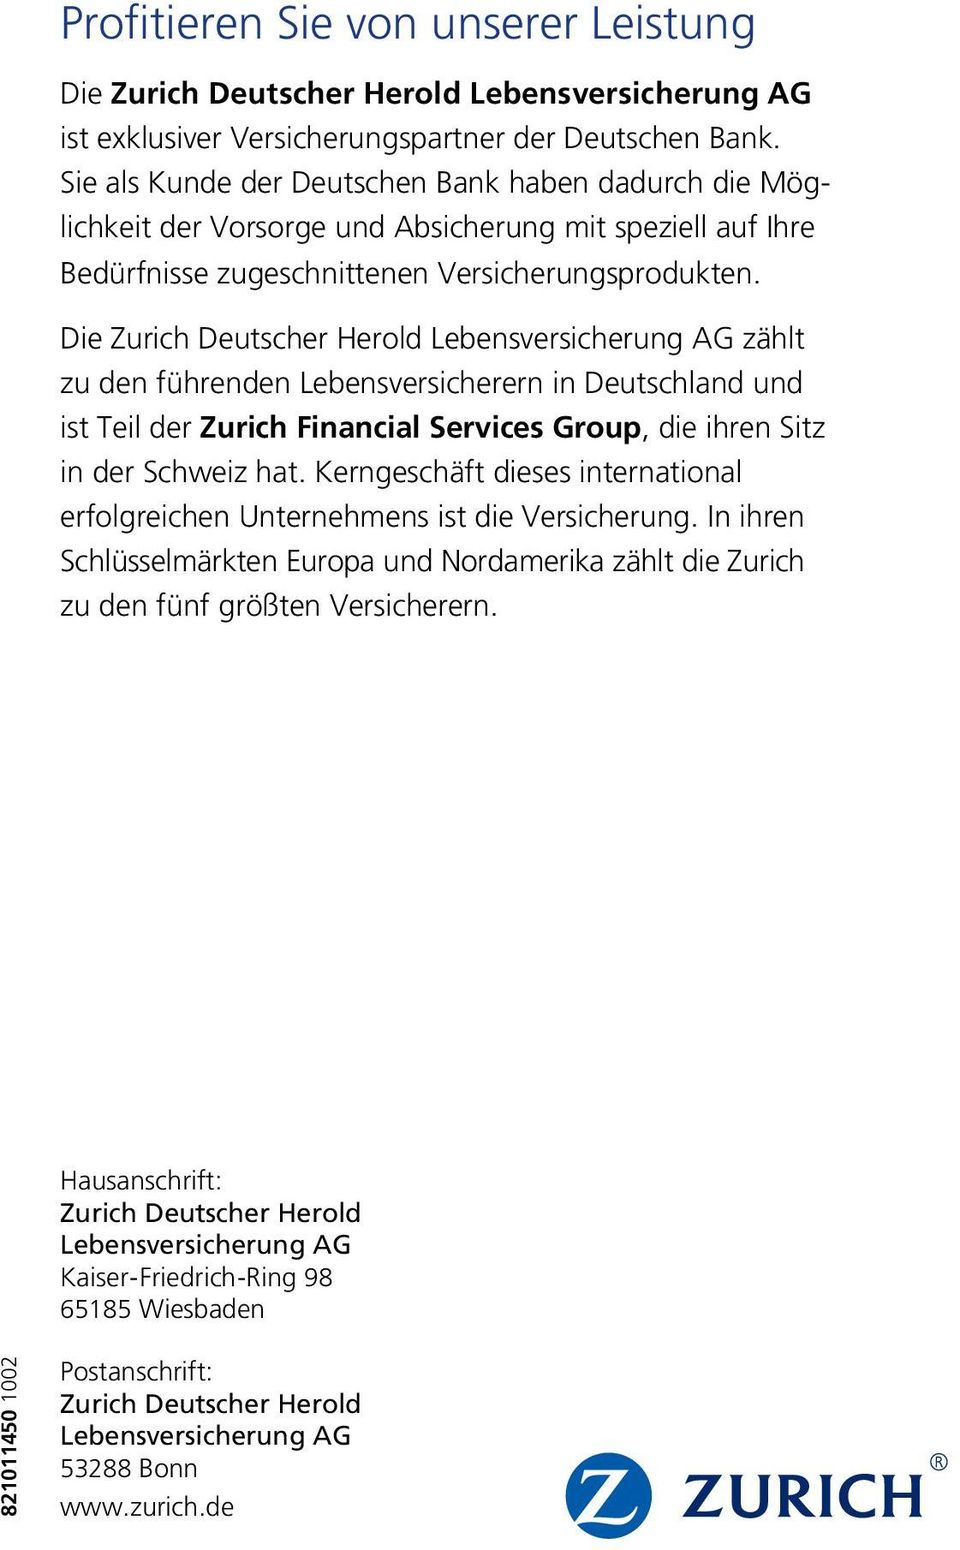 Die Zurich Deutscher Herold Lebensversicherung AG zählt zu den füh ren den Lebensversicherern in Deutschland und ist Teil der Zurich Financial Services Group, die ihren Sitz in der Schweiz hat.